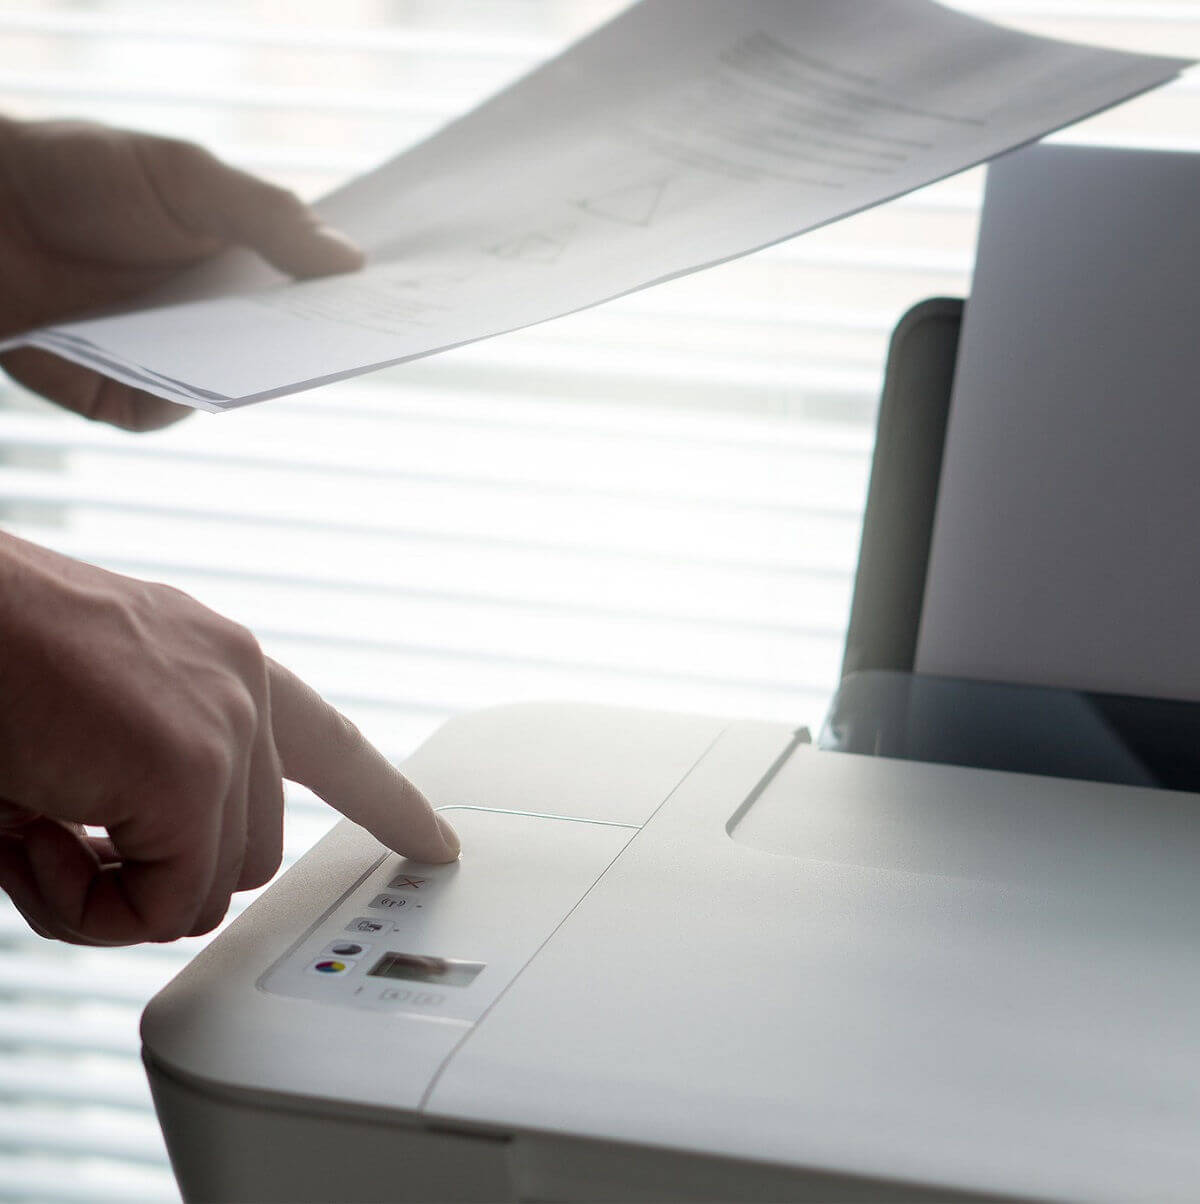 printer won't save scan file